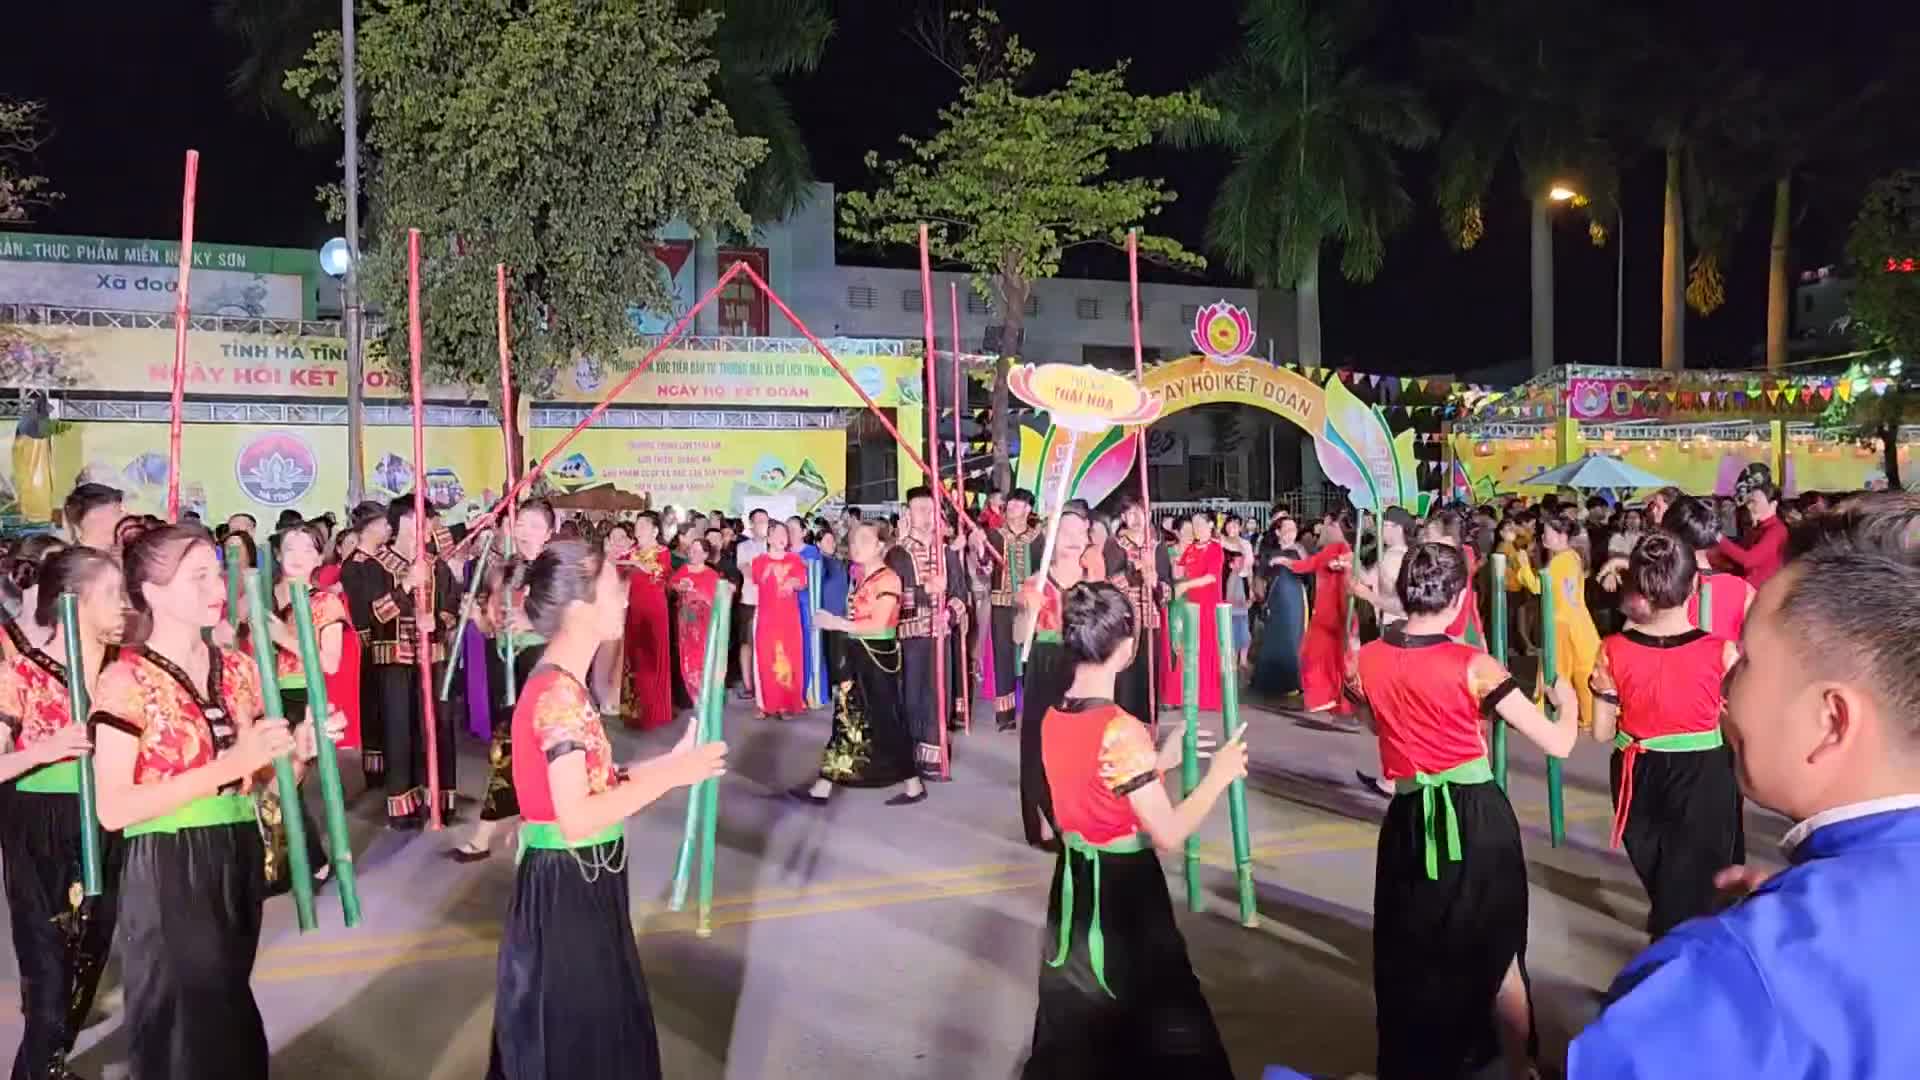 Sự kiện - Đêm hội kết đoàn tỉnh Nghệ An: Sức mạnh khối đại đoàn kết toàn dân tộc